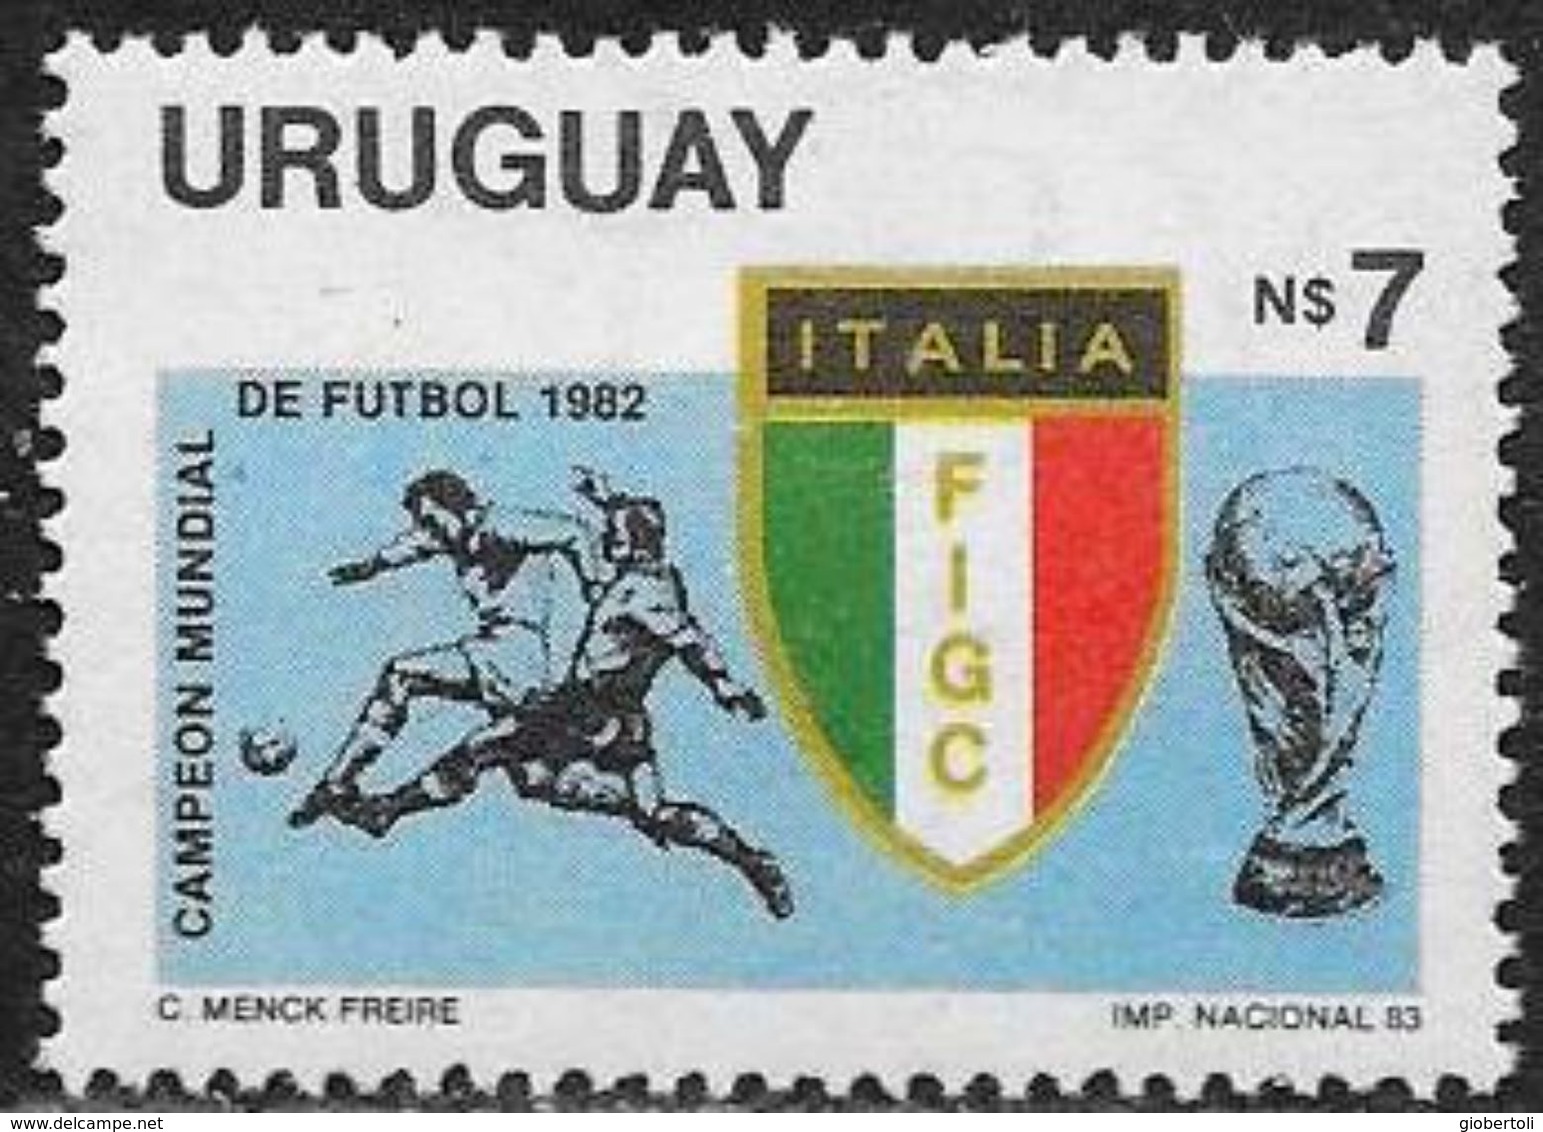 Uruguay: Italia Campione Del Mondo, Italie Champion Du Monde, Italy World Champion - 1982 – Spain